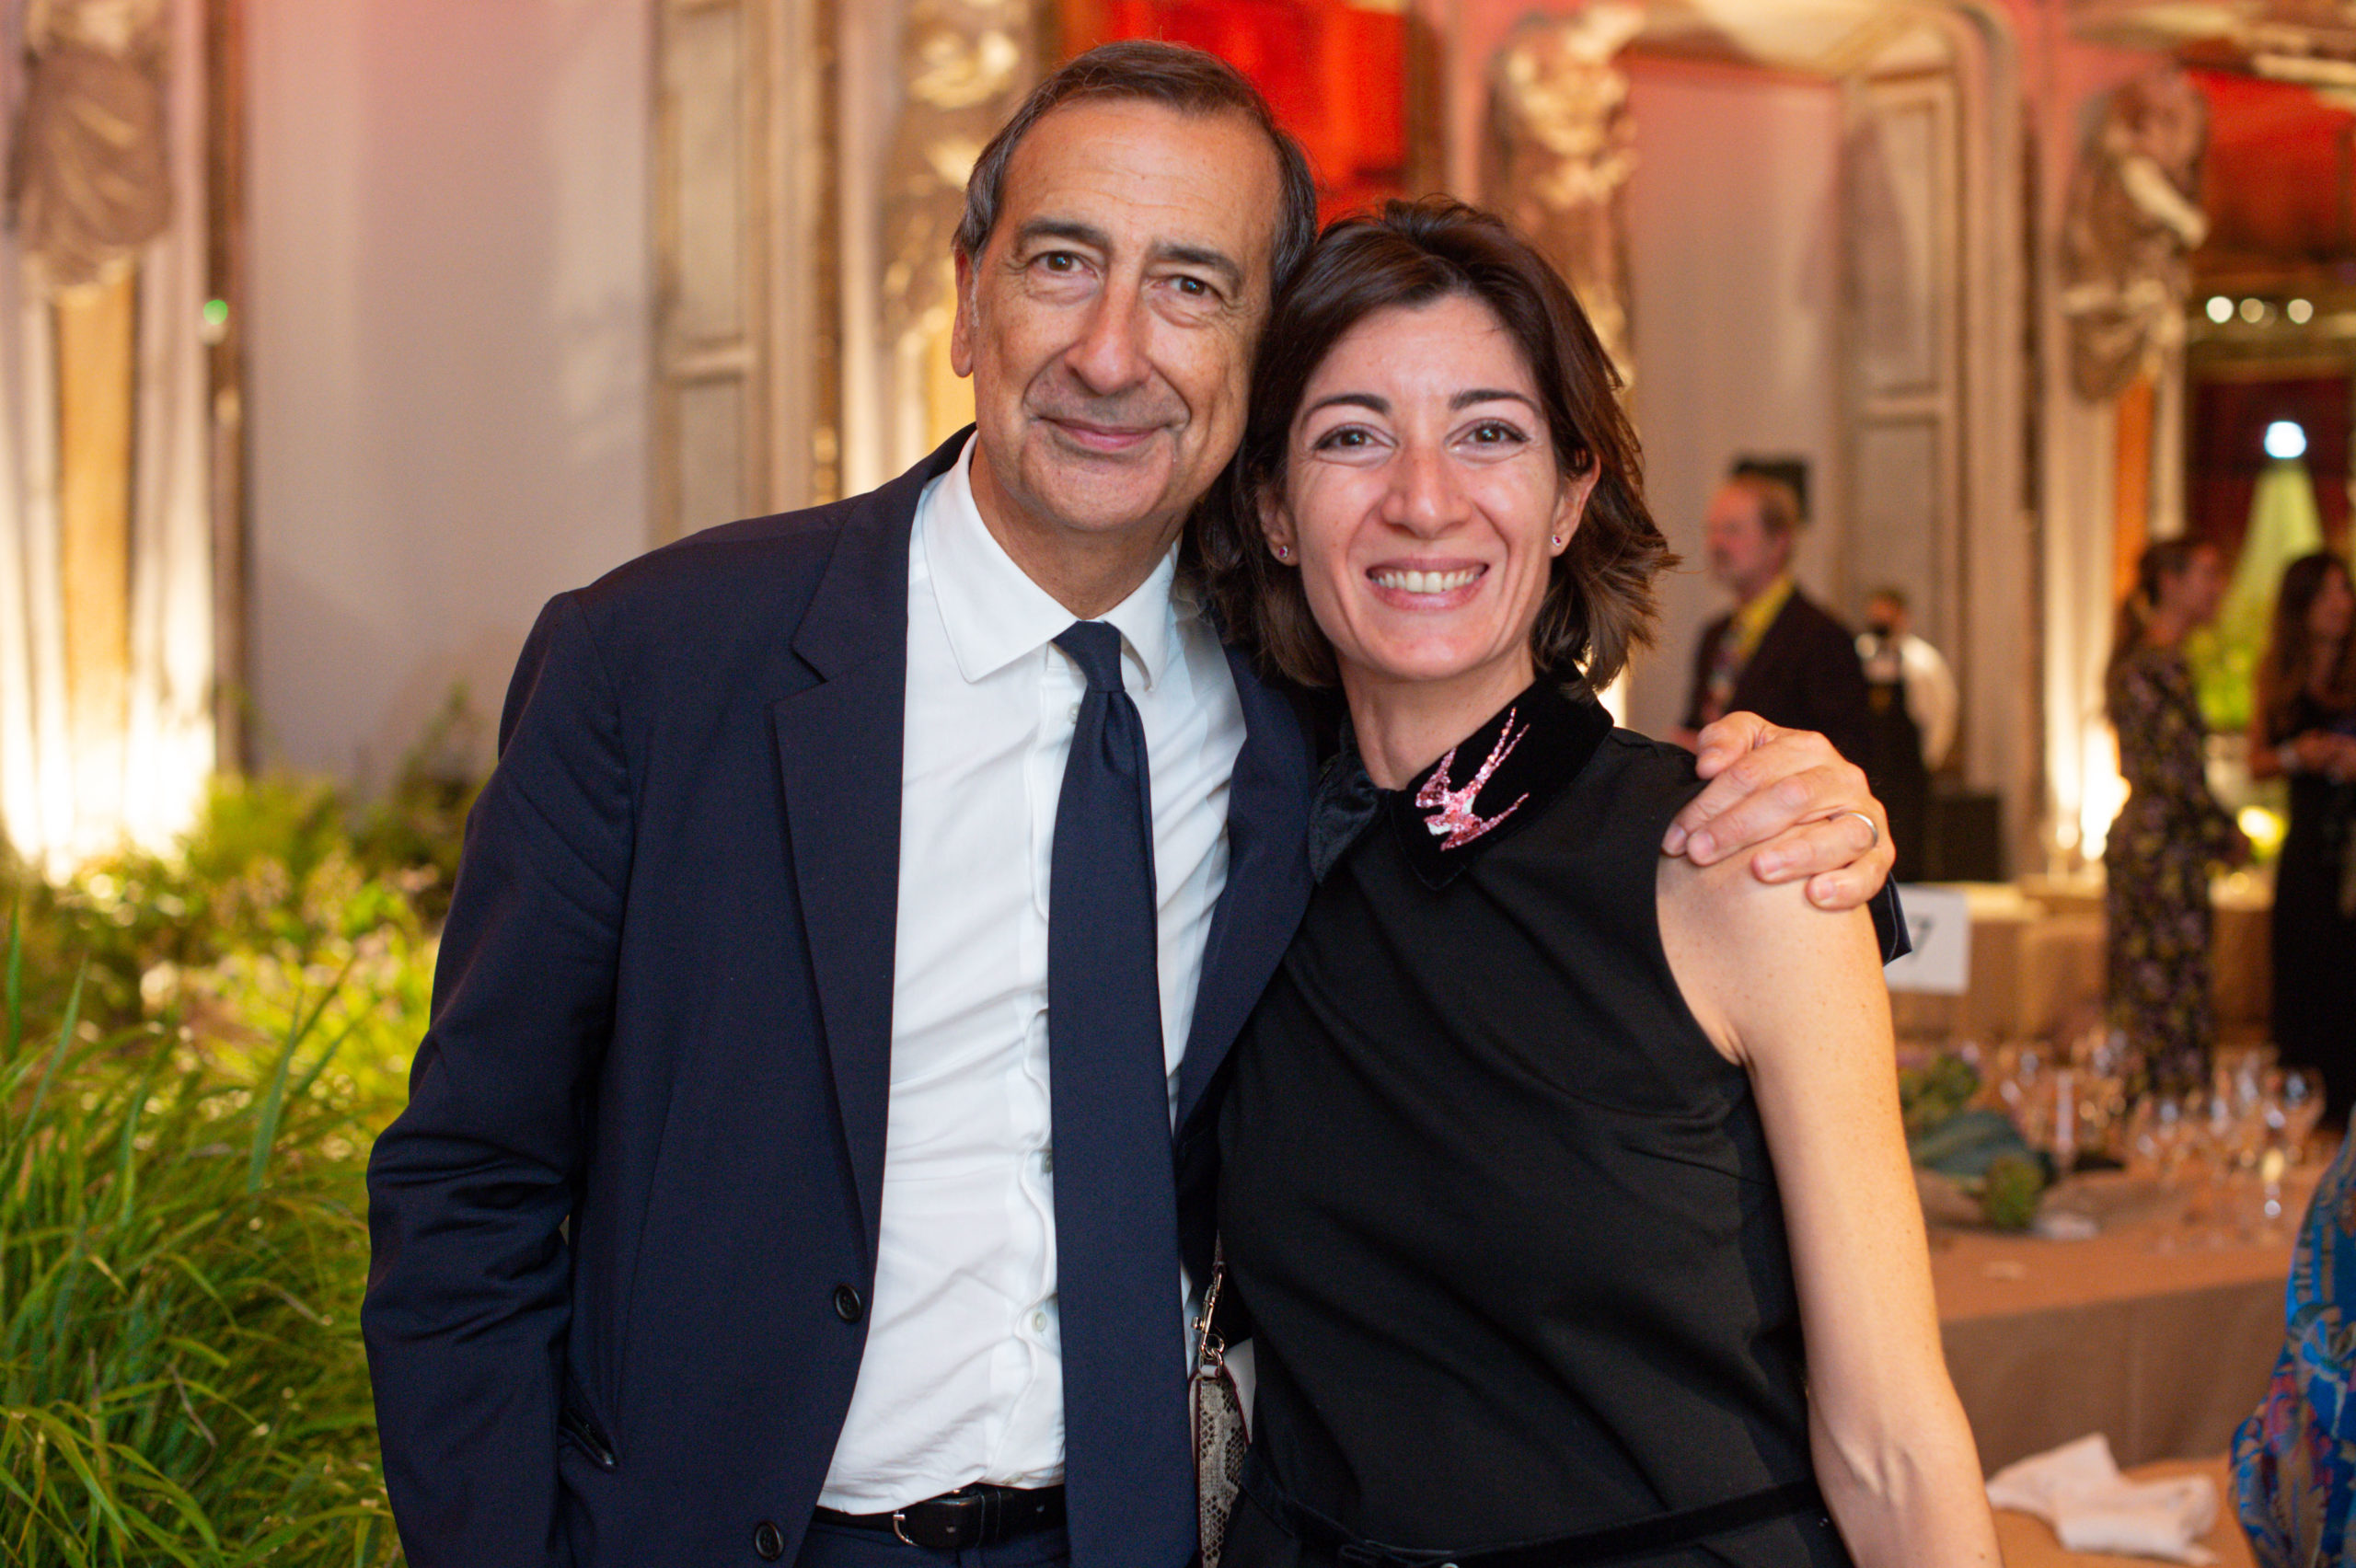  Giuseppe Sala & Cristina Tajani Image courtesy of CNMI